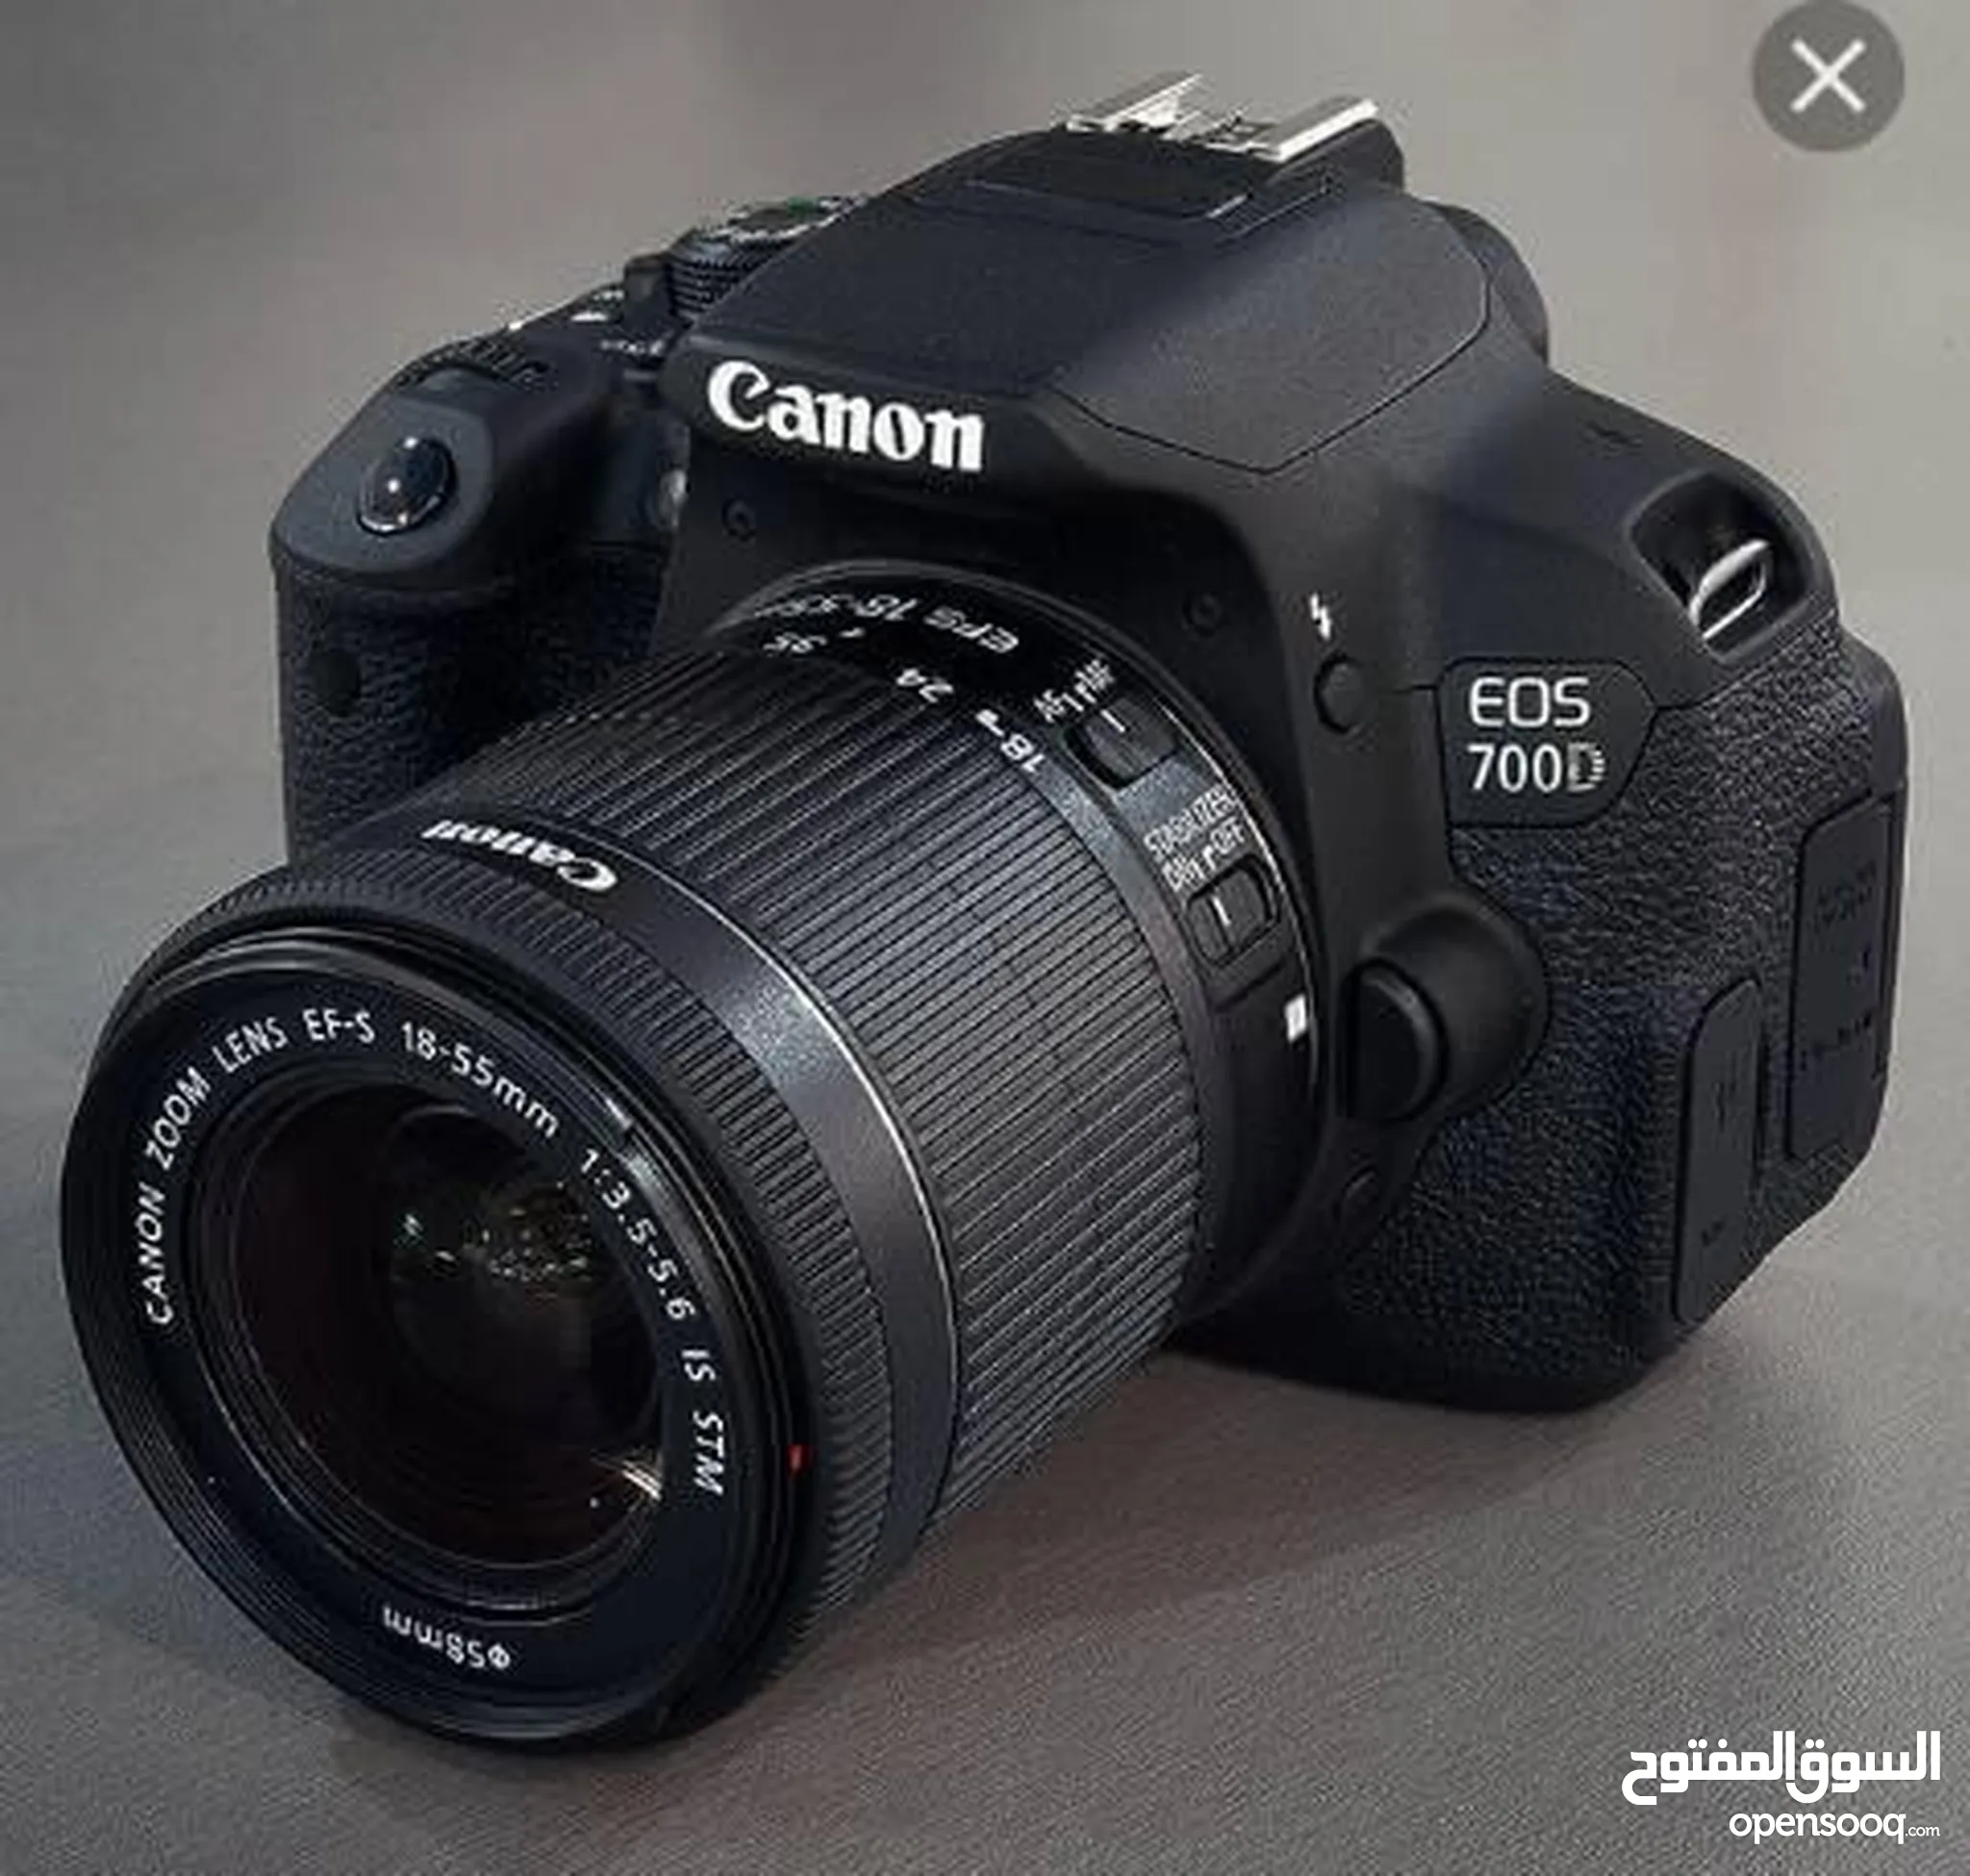 كام كانون للبيع : كاميرا كانون 4000d : 70D : 700D : 600D : 5D : أفضل الأسعار  : طرابلس | السوق المفتوح